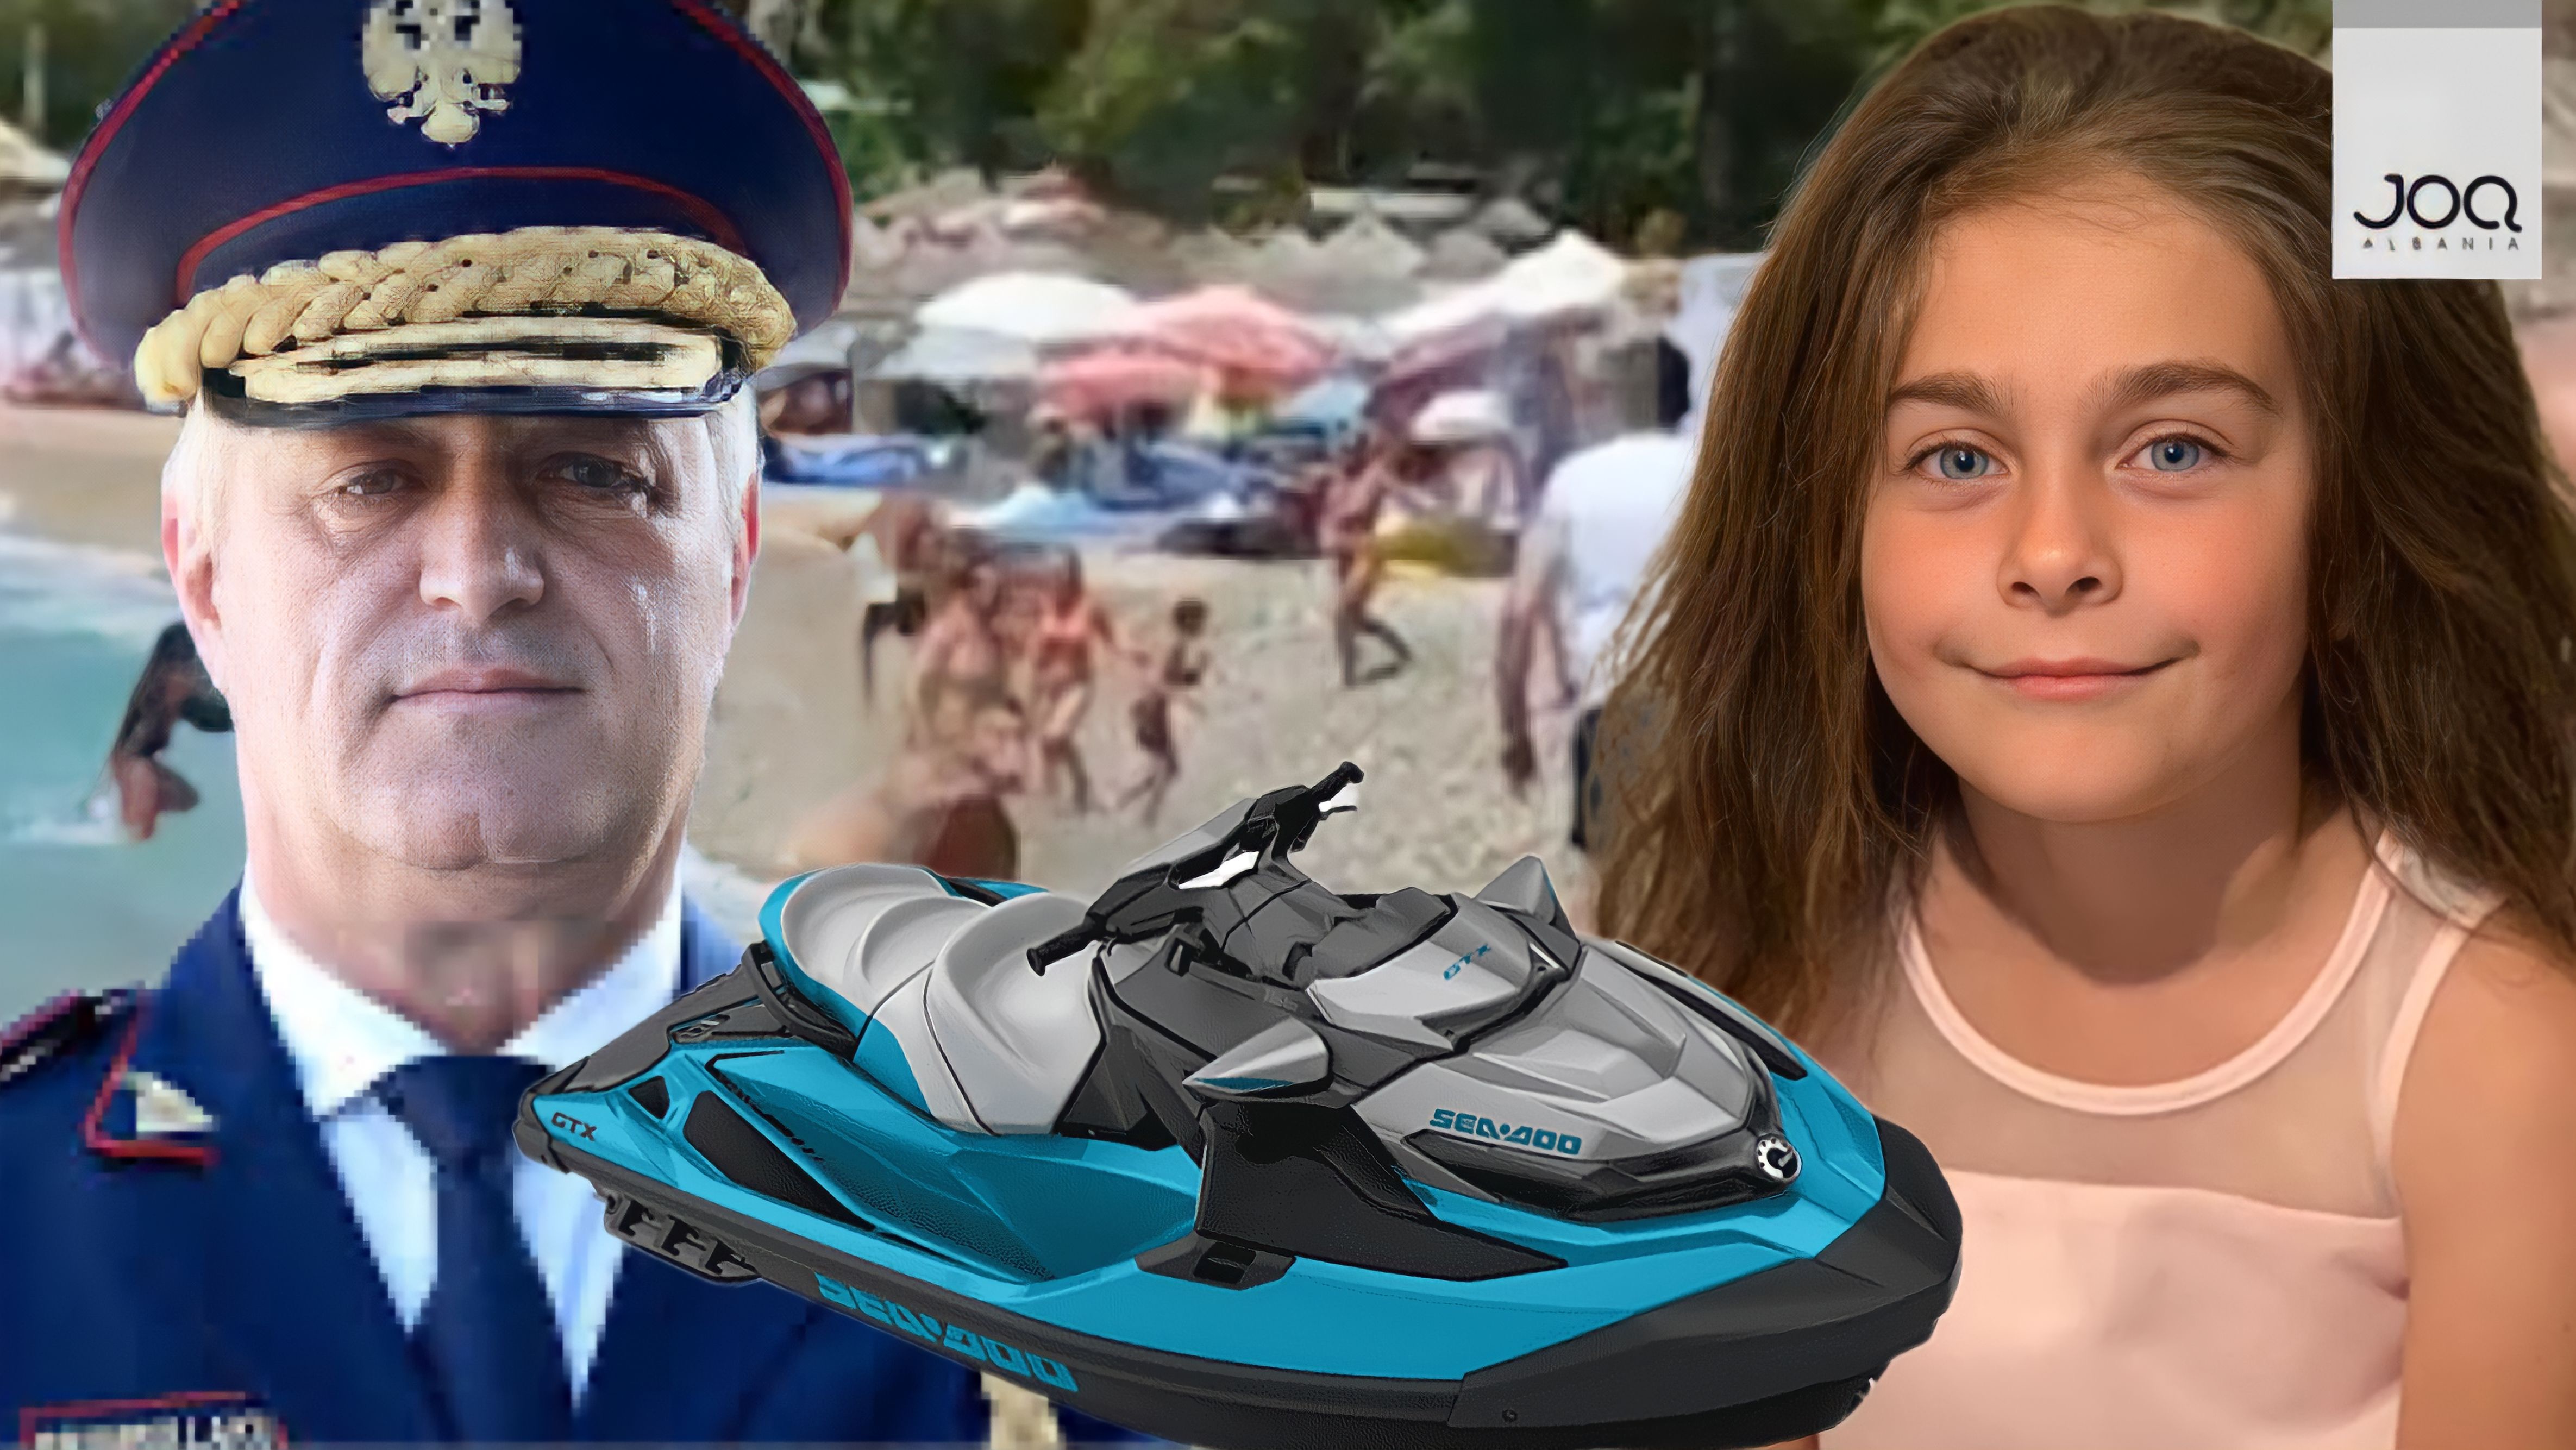 Jonadën e vrau polici me skaf/ Rrumbullaku dhurata 900 Milionë Lekë “Jet Ski” policëve tek “burgaxhiu”